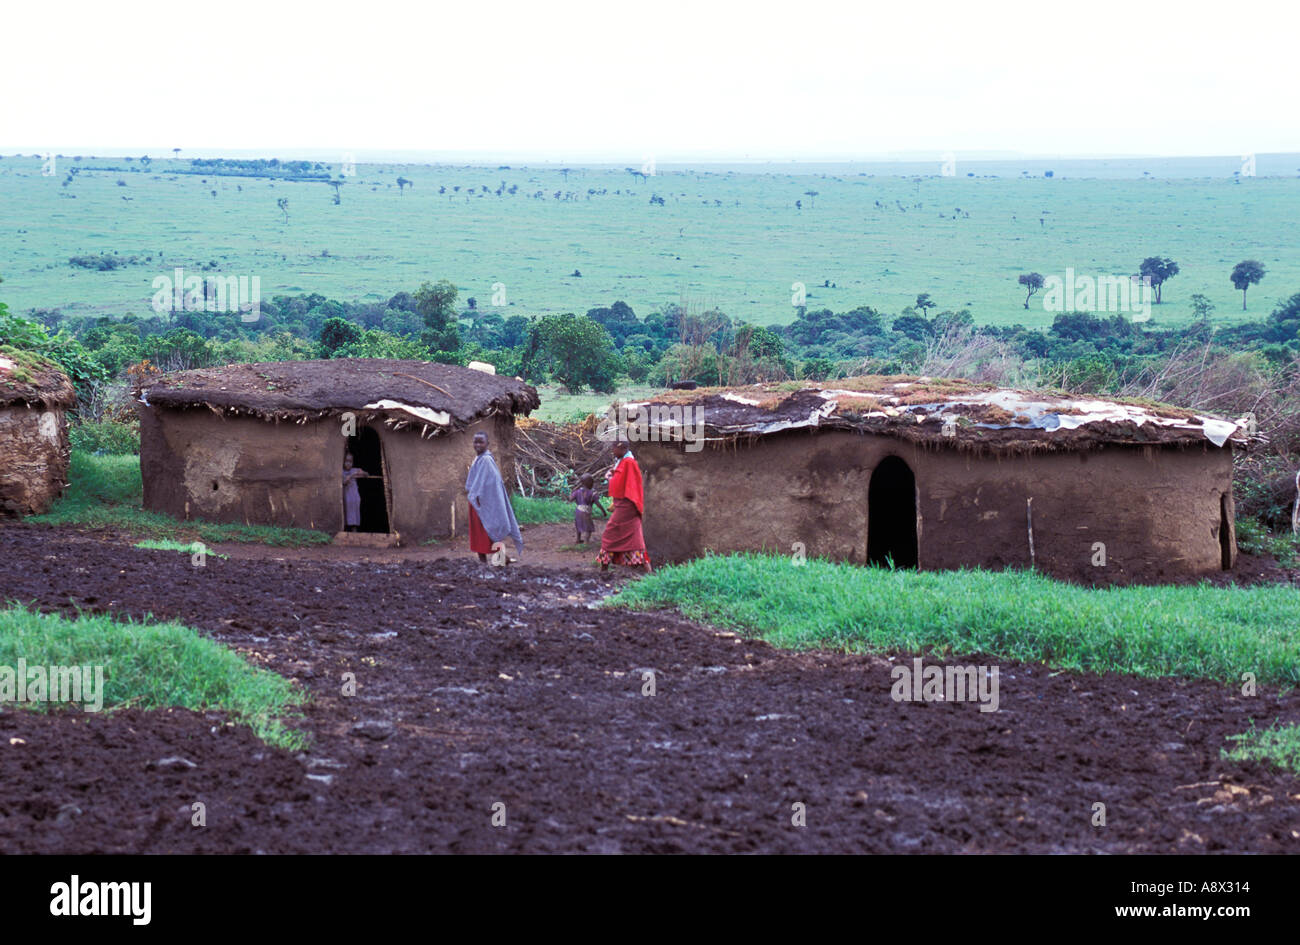 La réserve de Masai Mara KENYA Manyatta village de maisons circulaires traditionnels faits de fumier de vache et entouré d'une clôture d'épines à p Banque D'Images